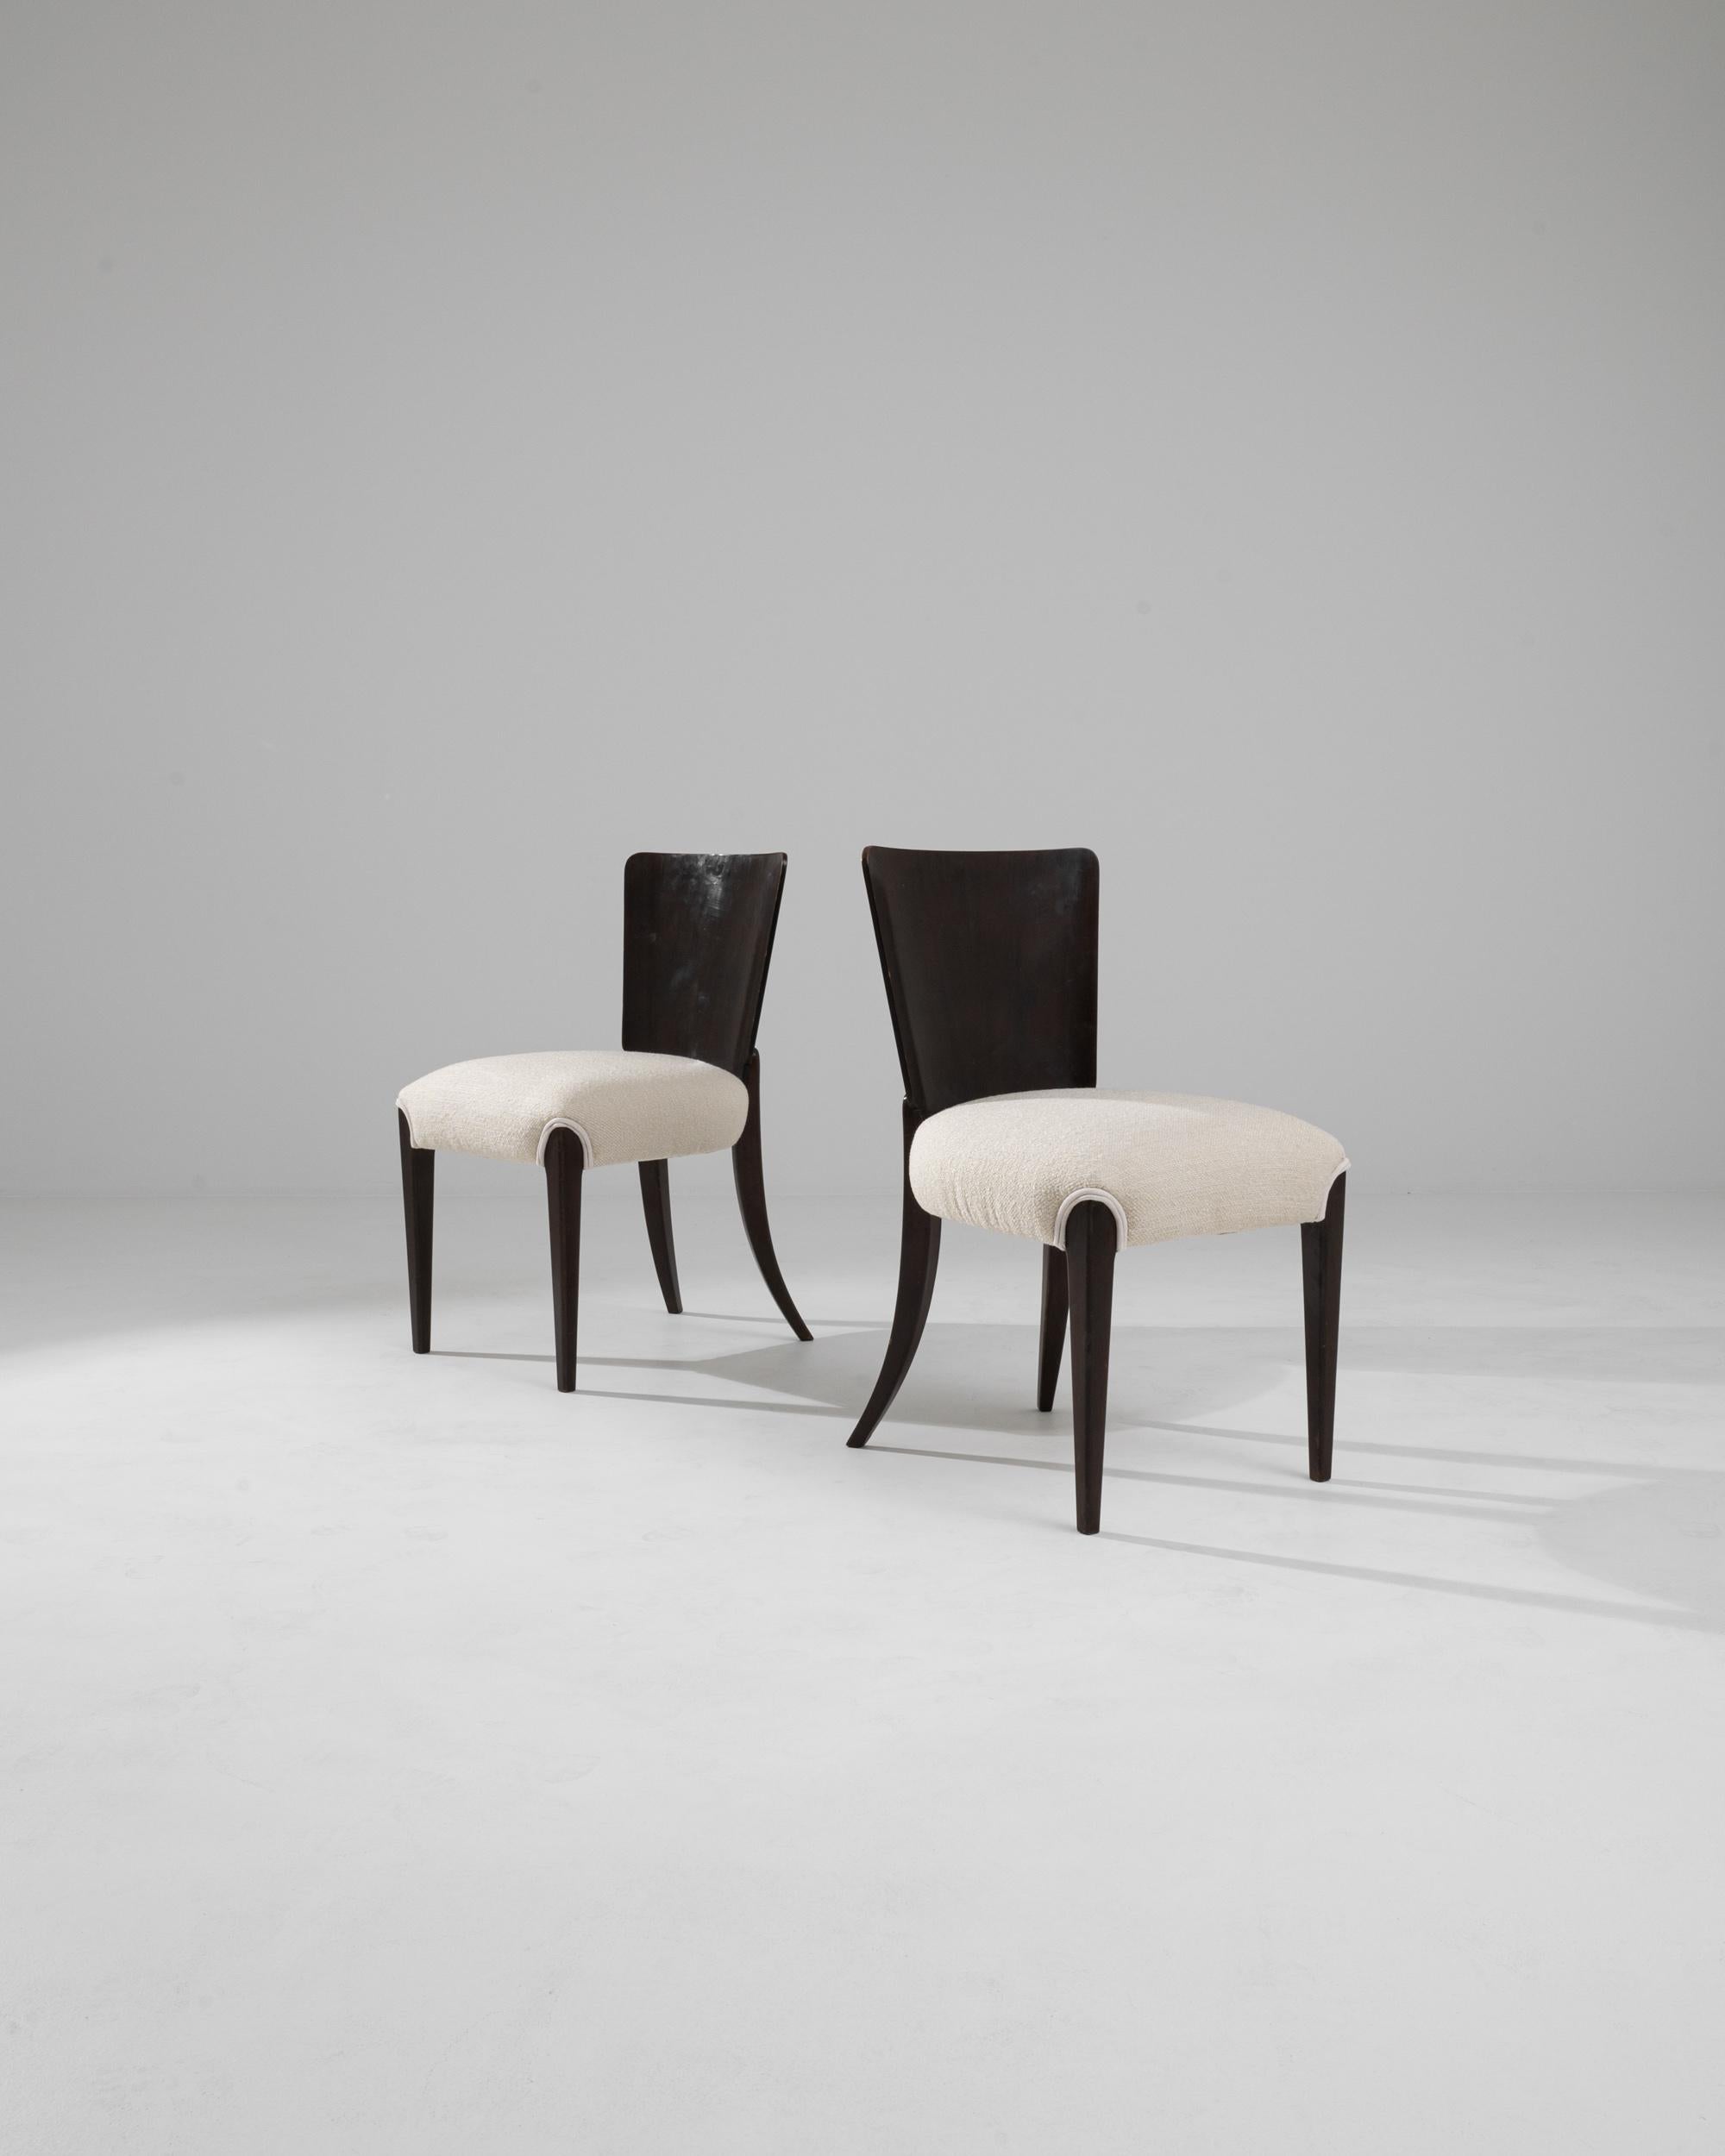 Les chaises tchèques du XXe siècle de J. Halabala sont un exemple de fusion entre le design fonctionnel et l'élégance artistique. Ces chaises présentent les courbes profilées caractéristiques de Halabala et un sens aigu de l'équilibre entre la forme